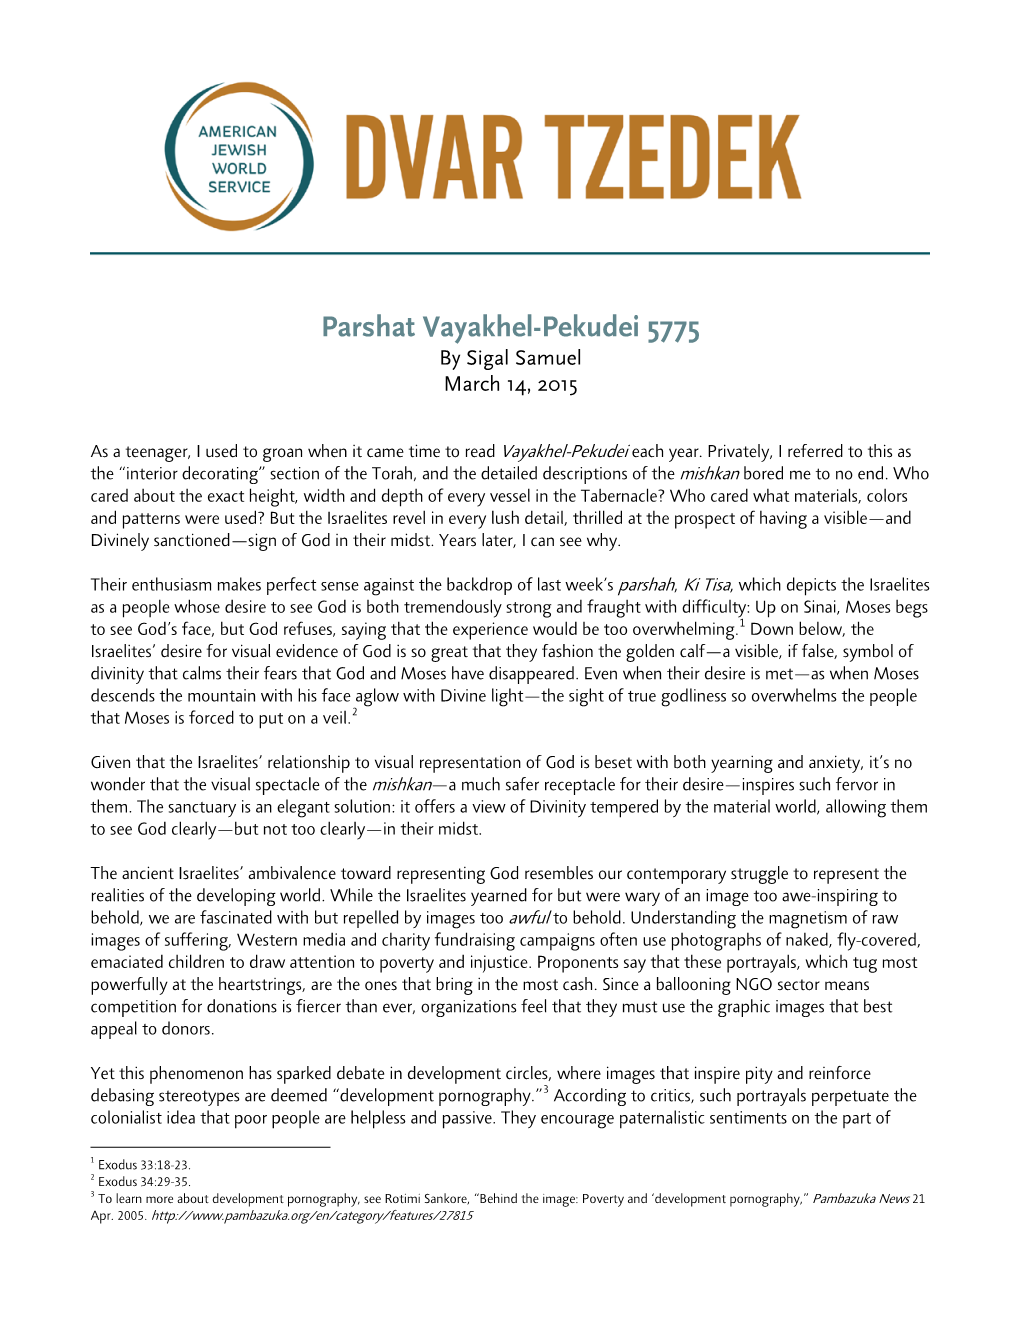 Parshat Vayakhel-Pekudei 5775 by Sigal Samuel March 14, 2015